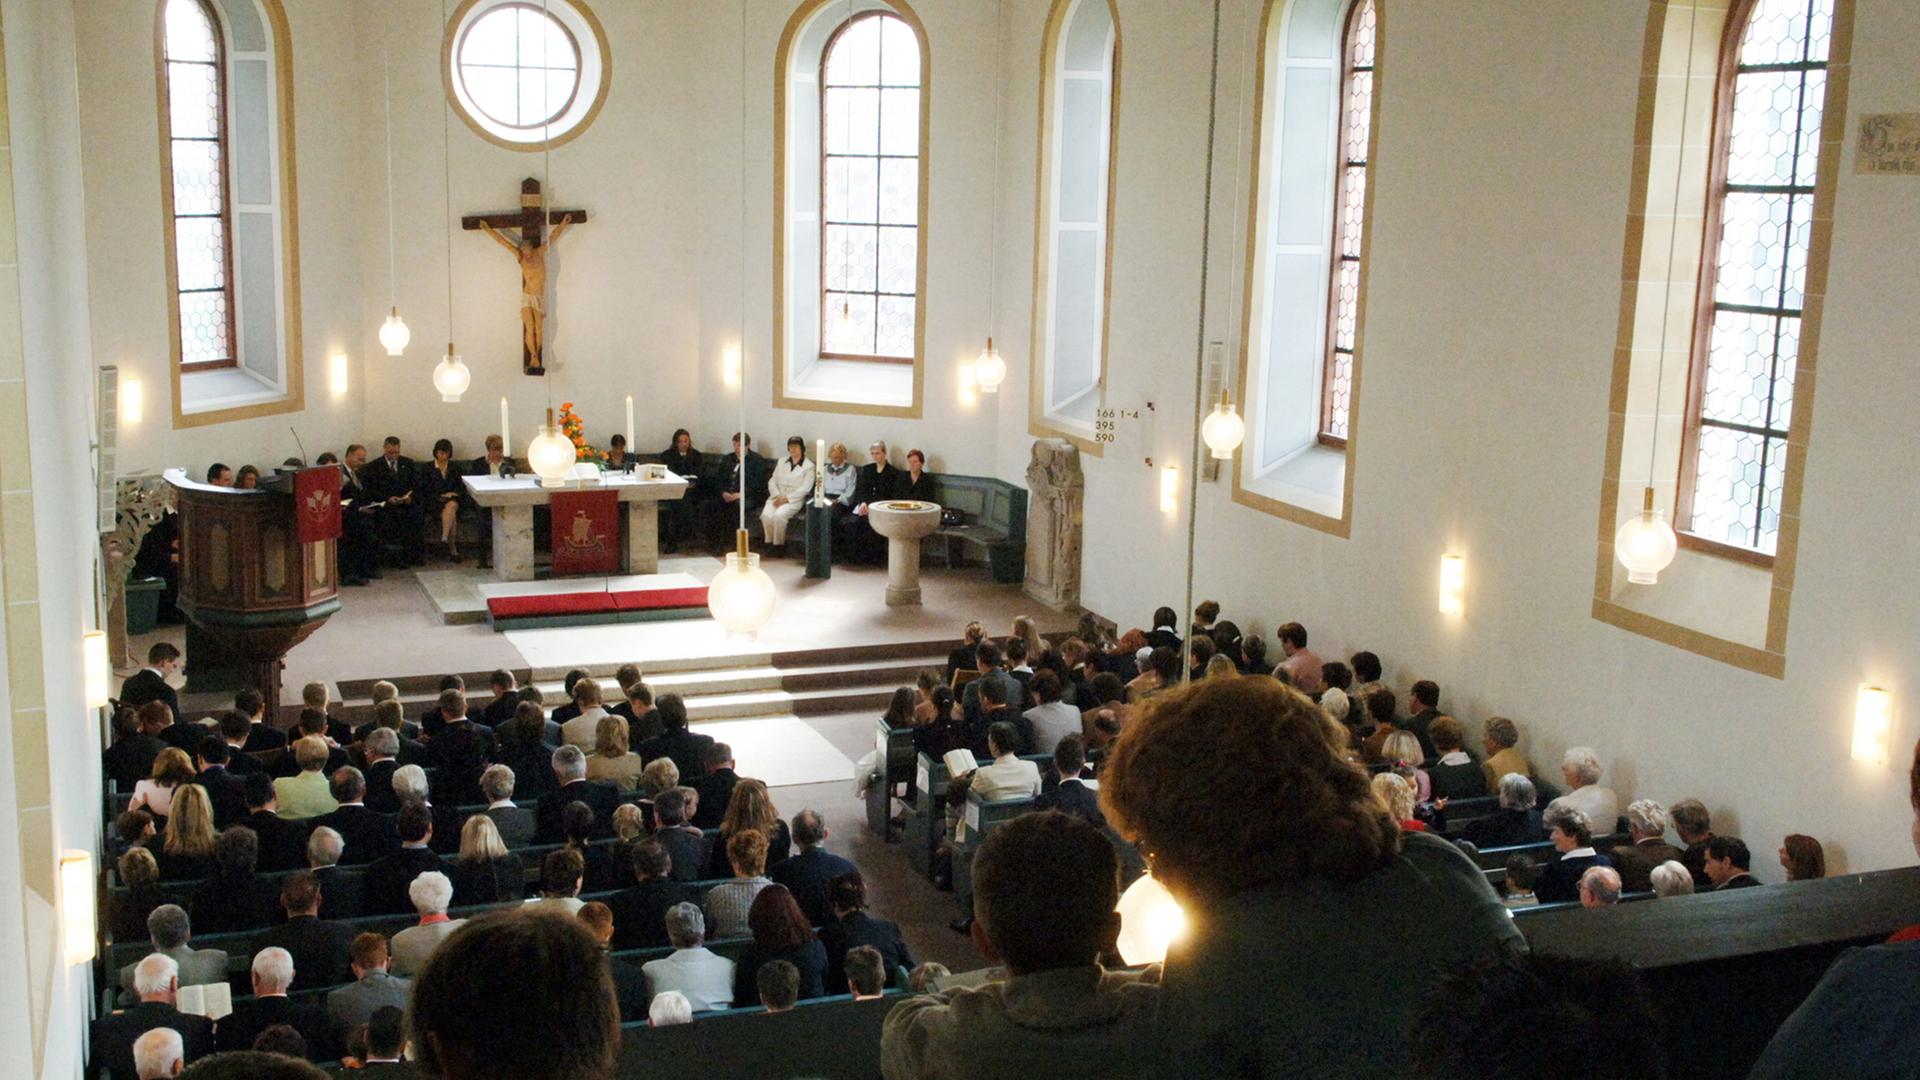 Evangelischer Konfirmationsgottesdienst in der Lutherkirche von Griesheim (Kreis Darmstadt-Dieburg)